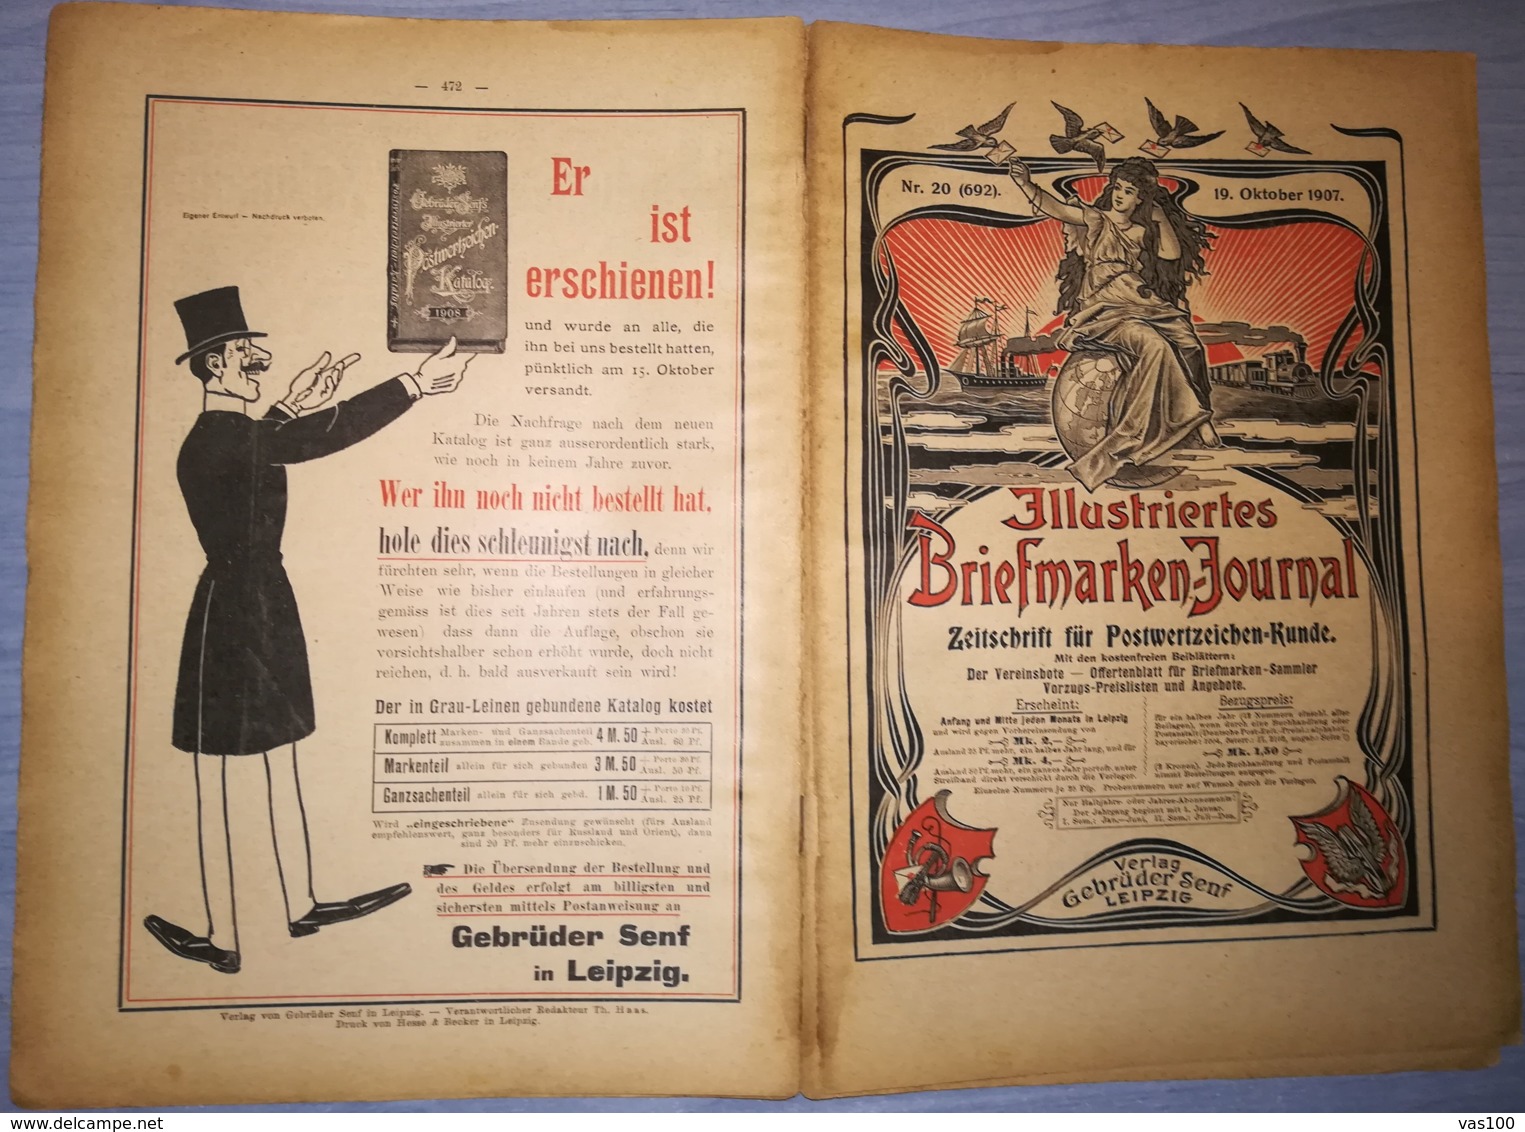 ILLUSTRATED STAMPS JOURNAL- ILLUSTRIERTES BRIEFMARKEN JOURNAL, LEIPZIG, NR 20, OCTOBER 1907, GERMANY - German (until 1940)